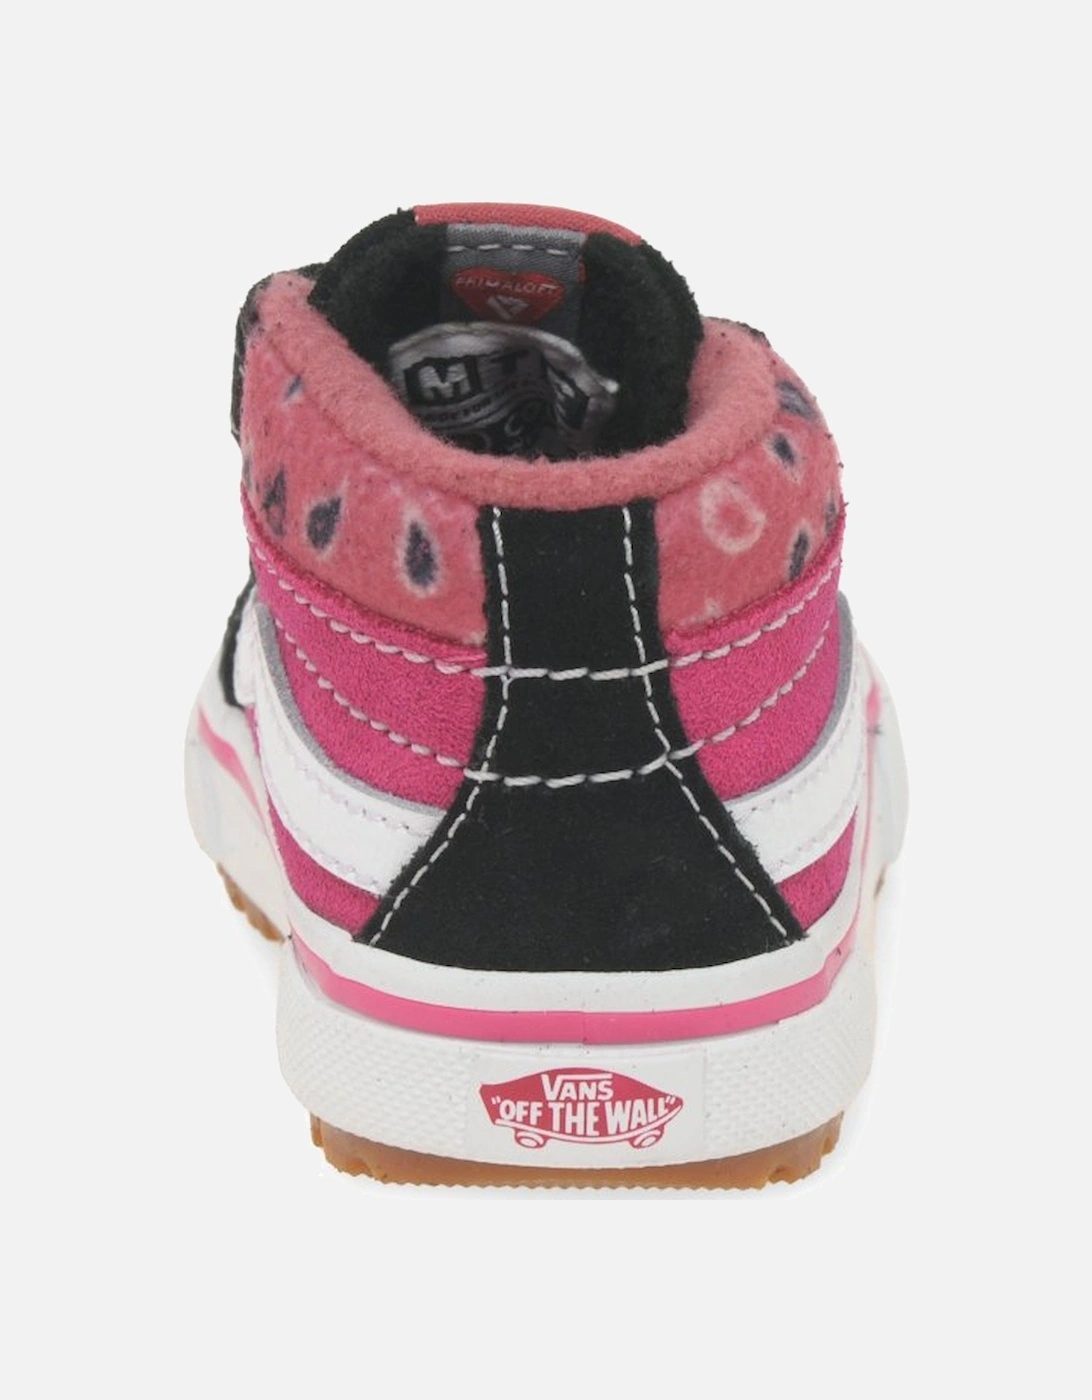 SK8 Mid Reissue V Girls Toddler Boots